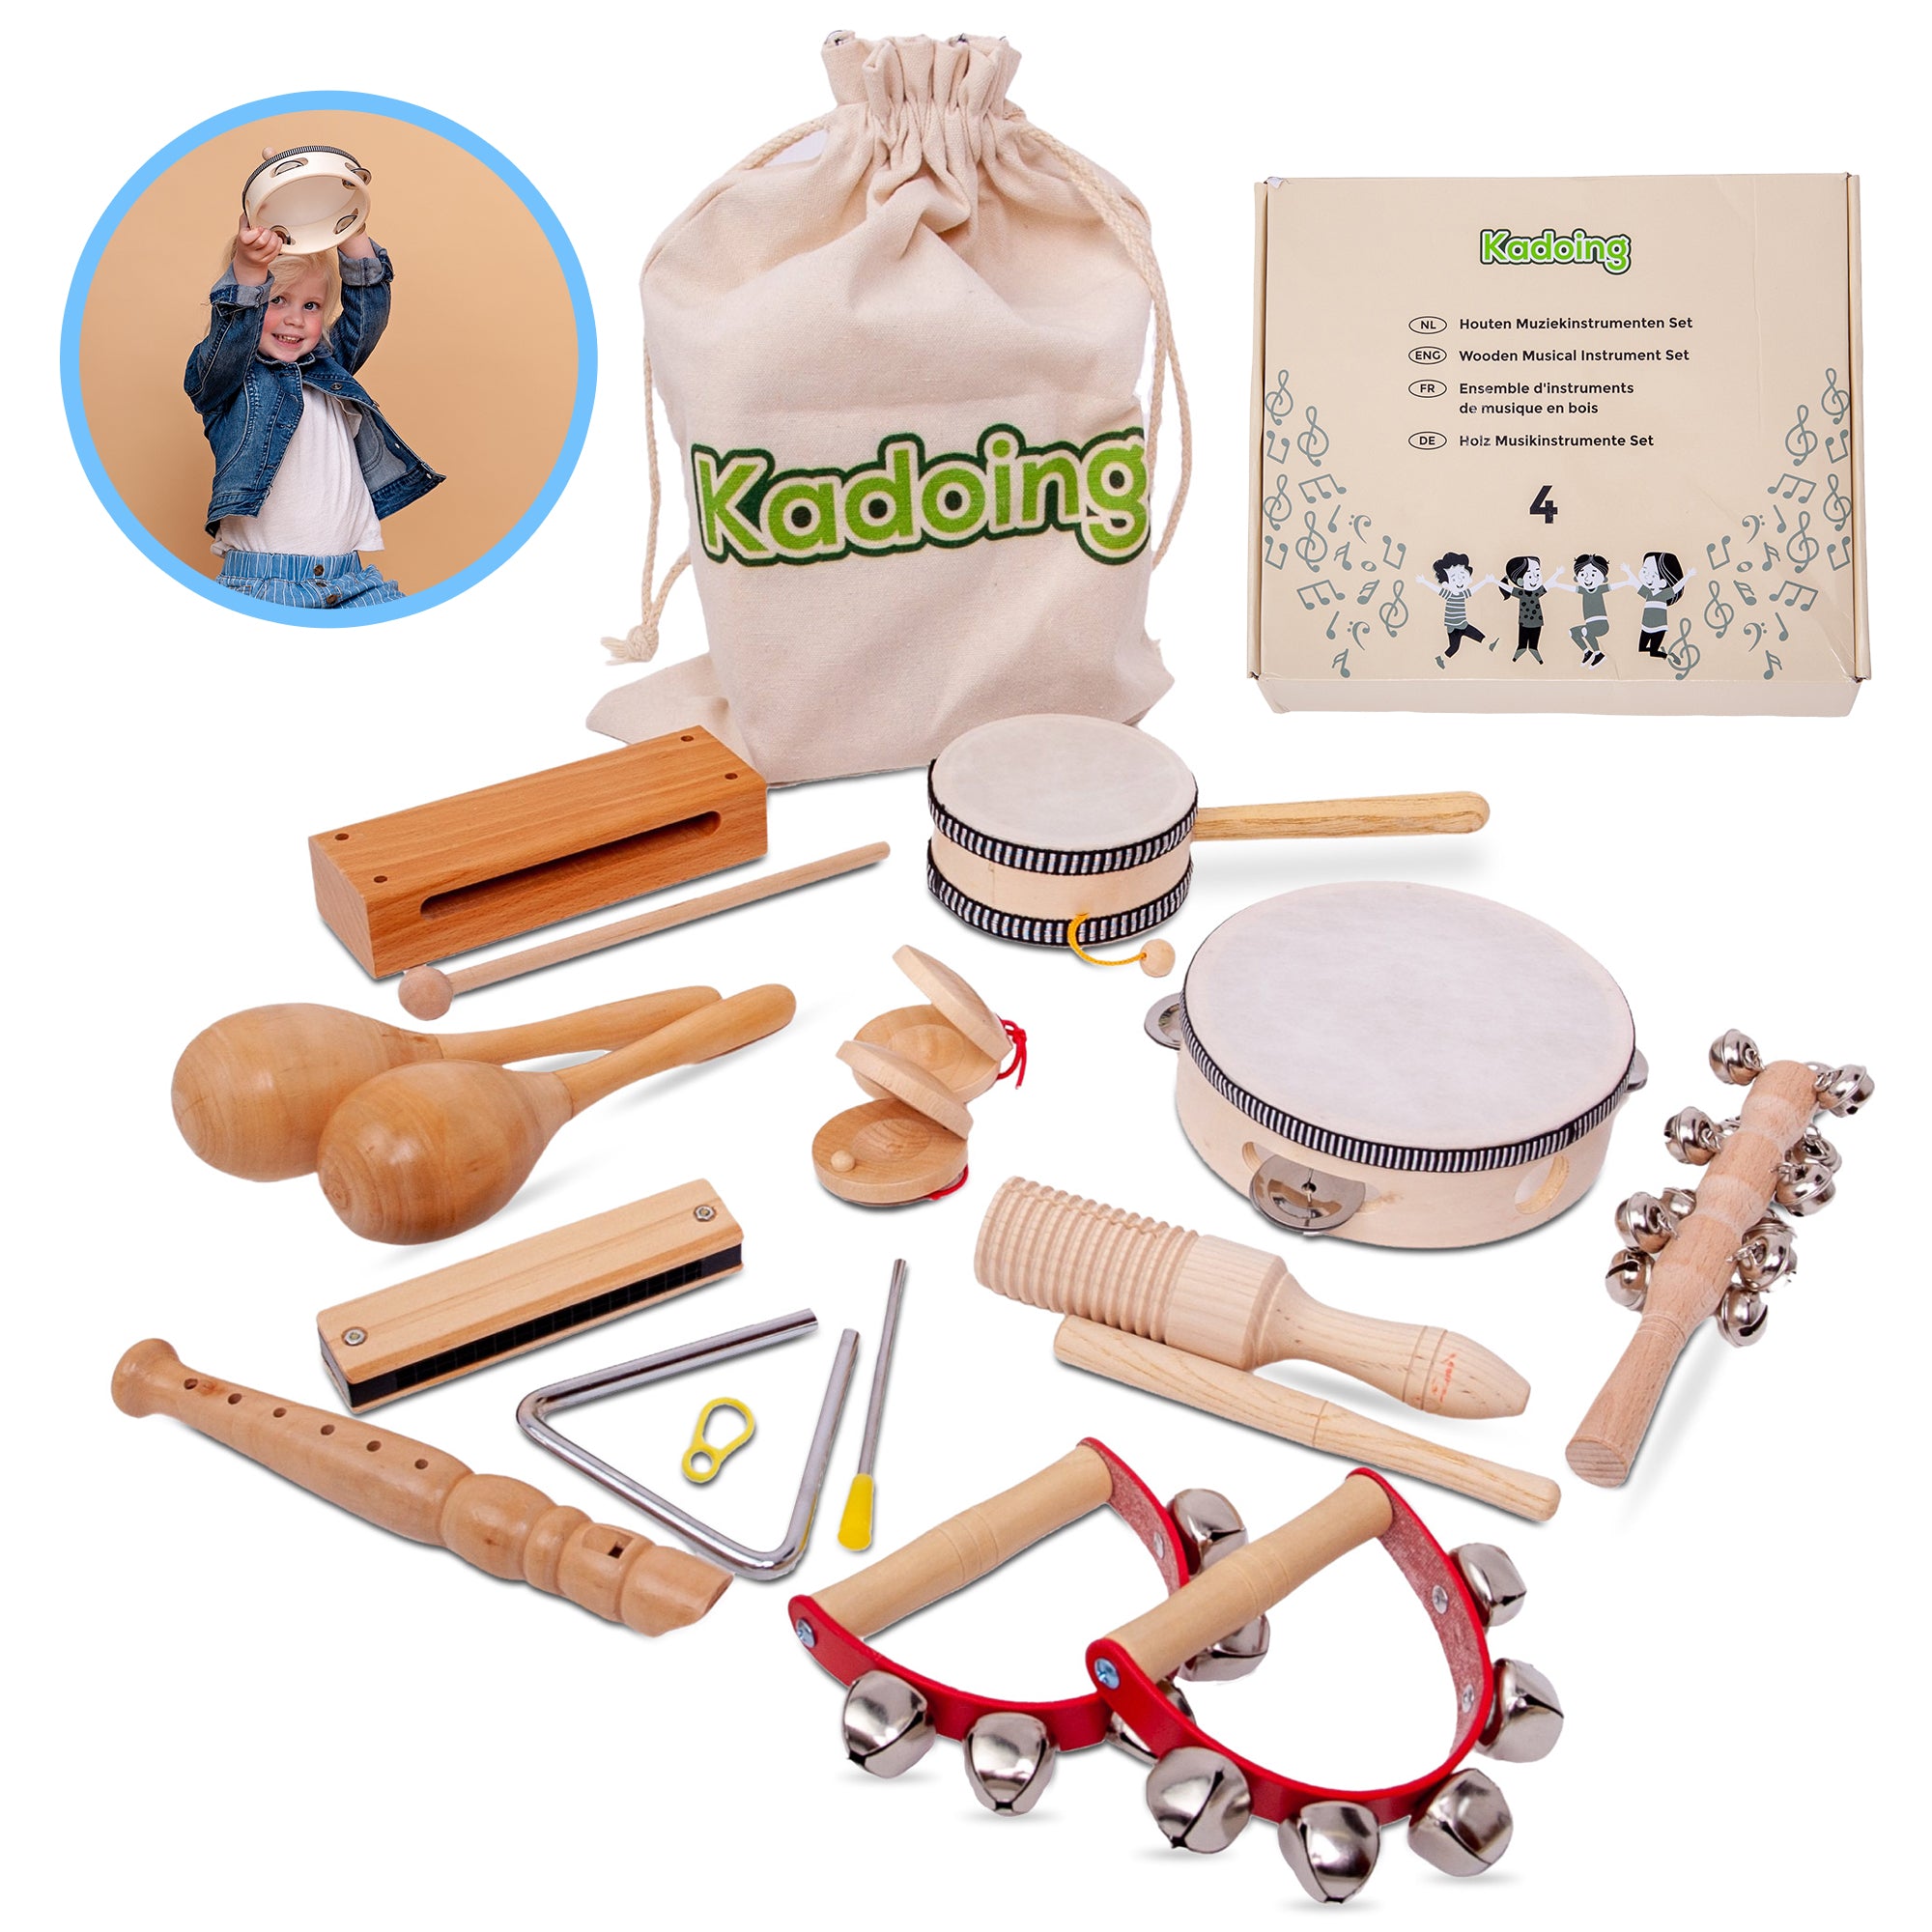 Ensemble d'instruments de musique en bois de 18 pièces de Kadoing. Le jouet ultime pour enfants